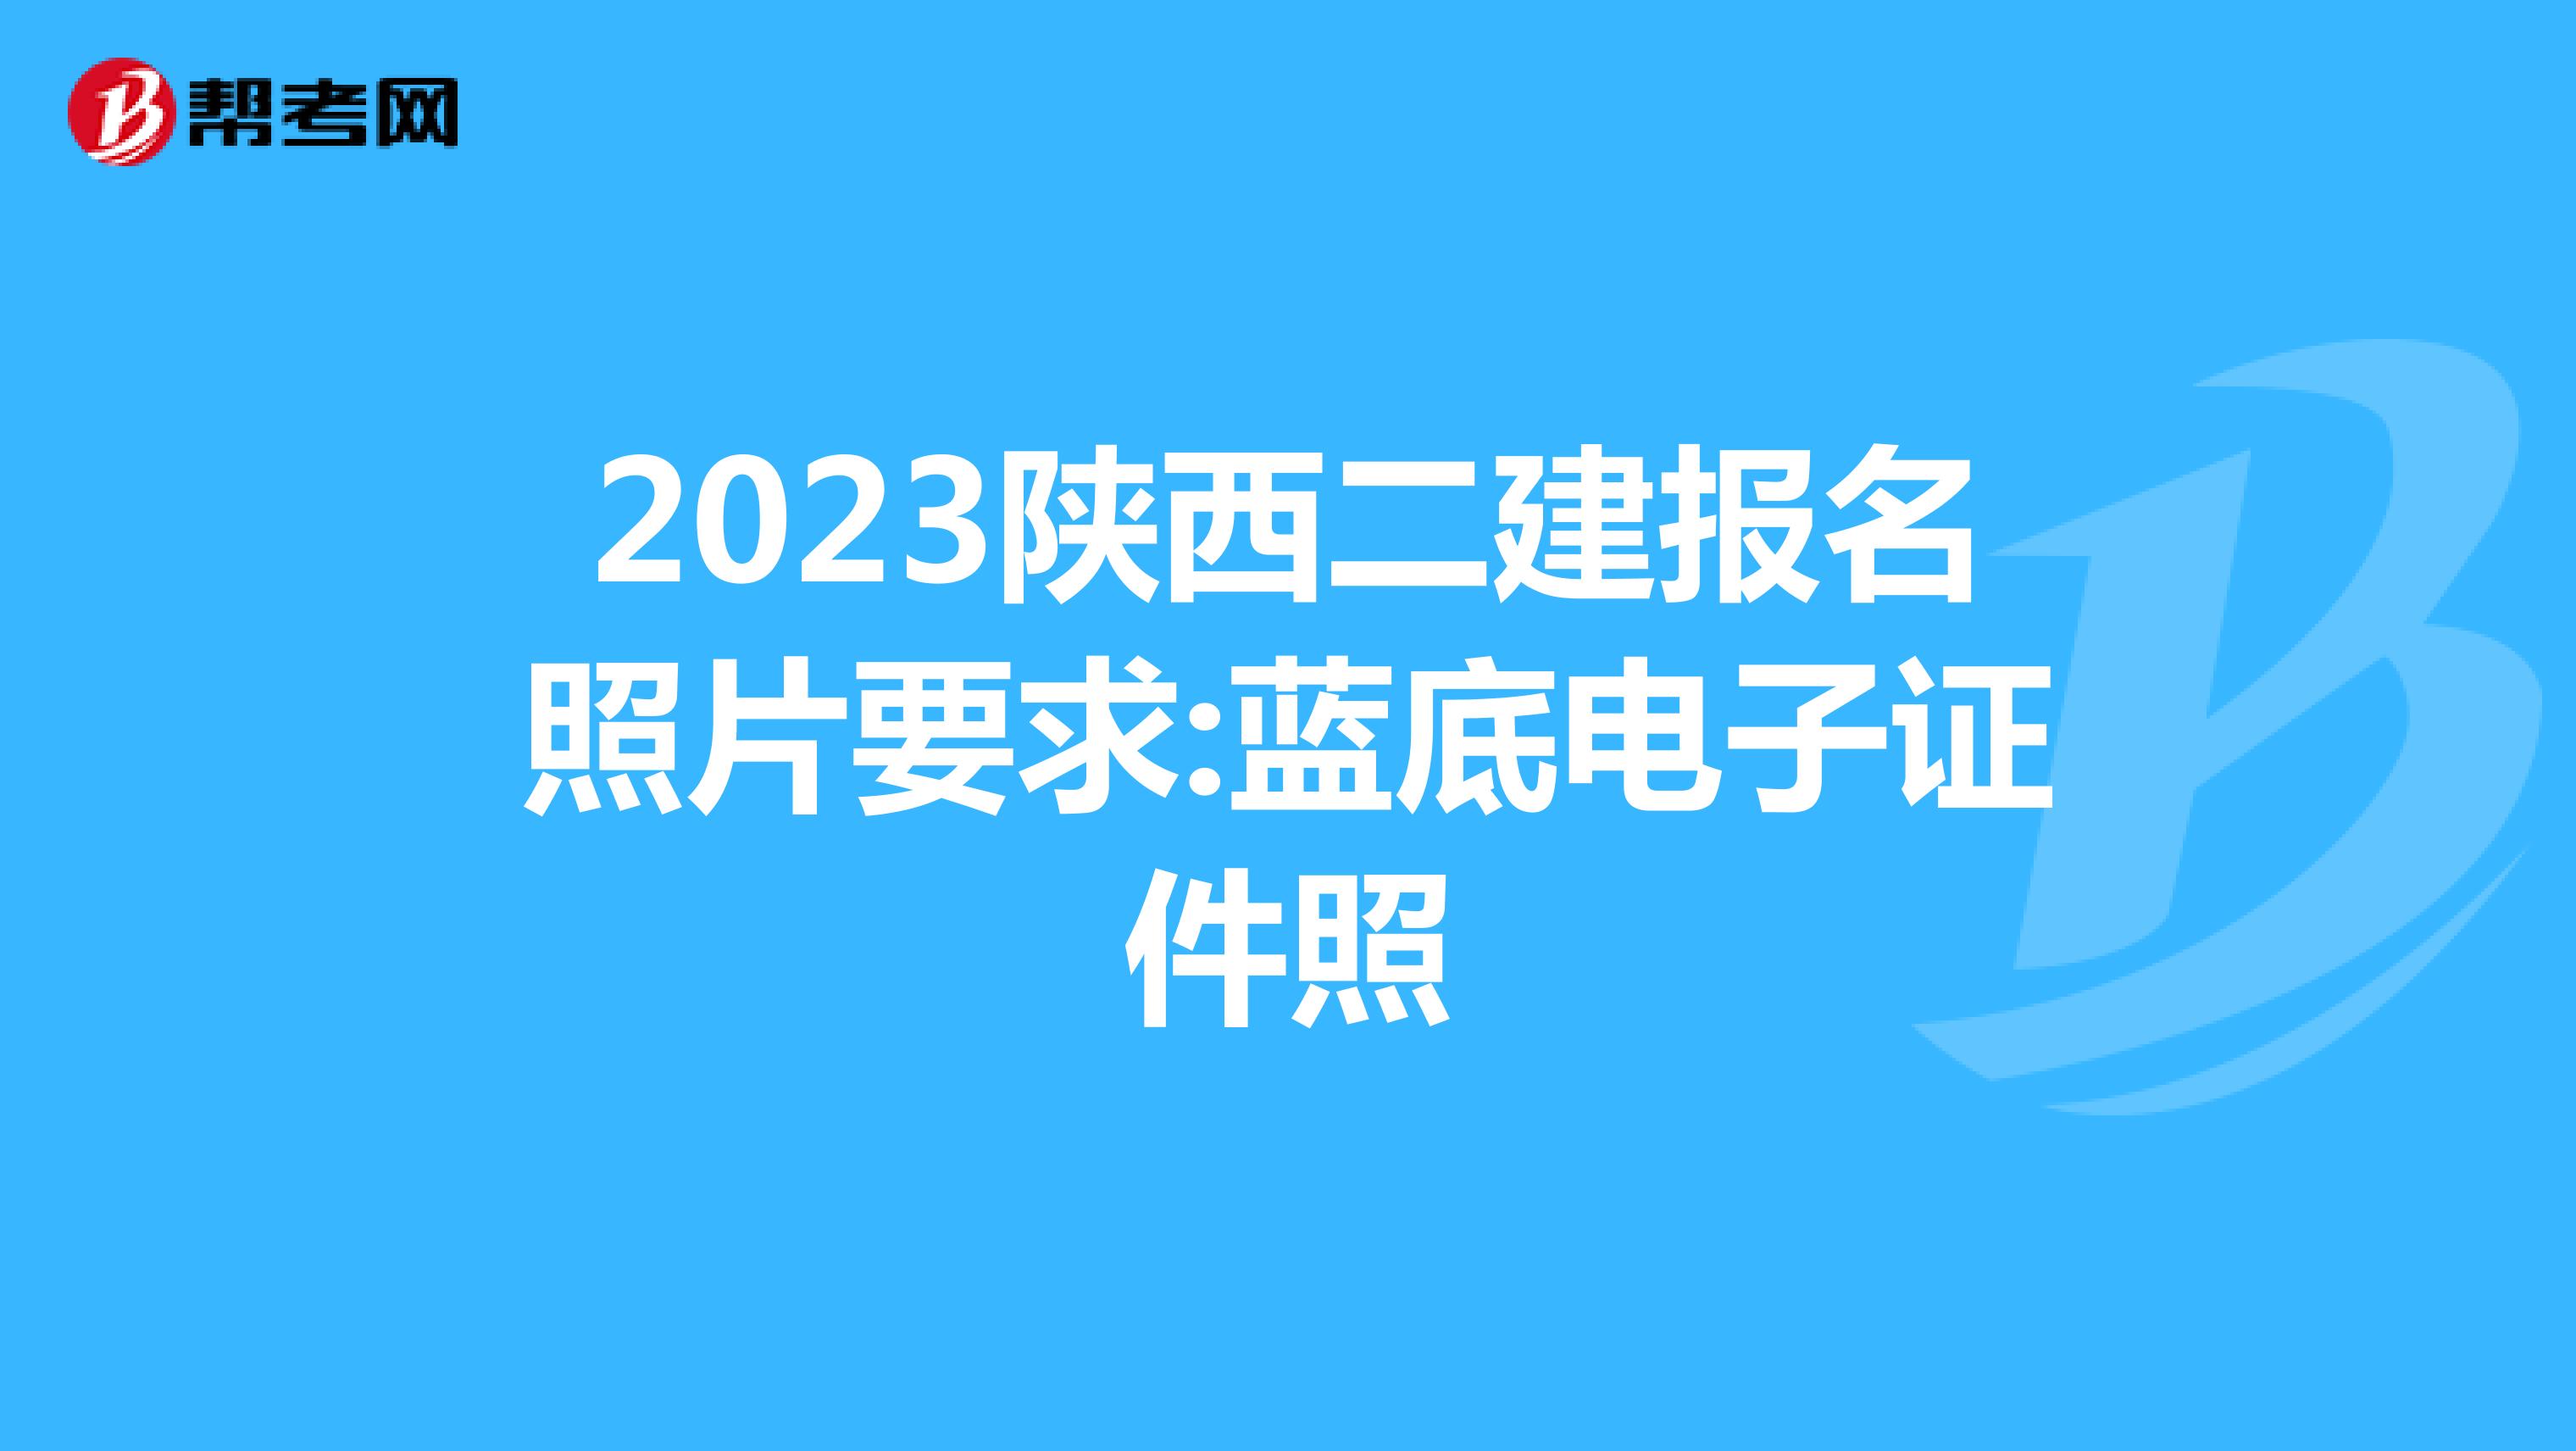 2023陕西二建报名照片要求:蓝底电子证件照